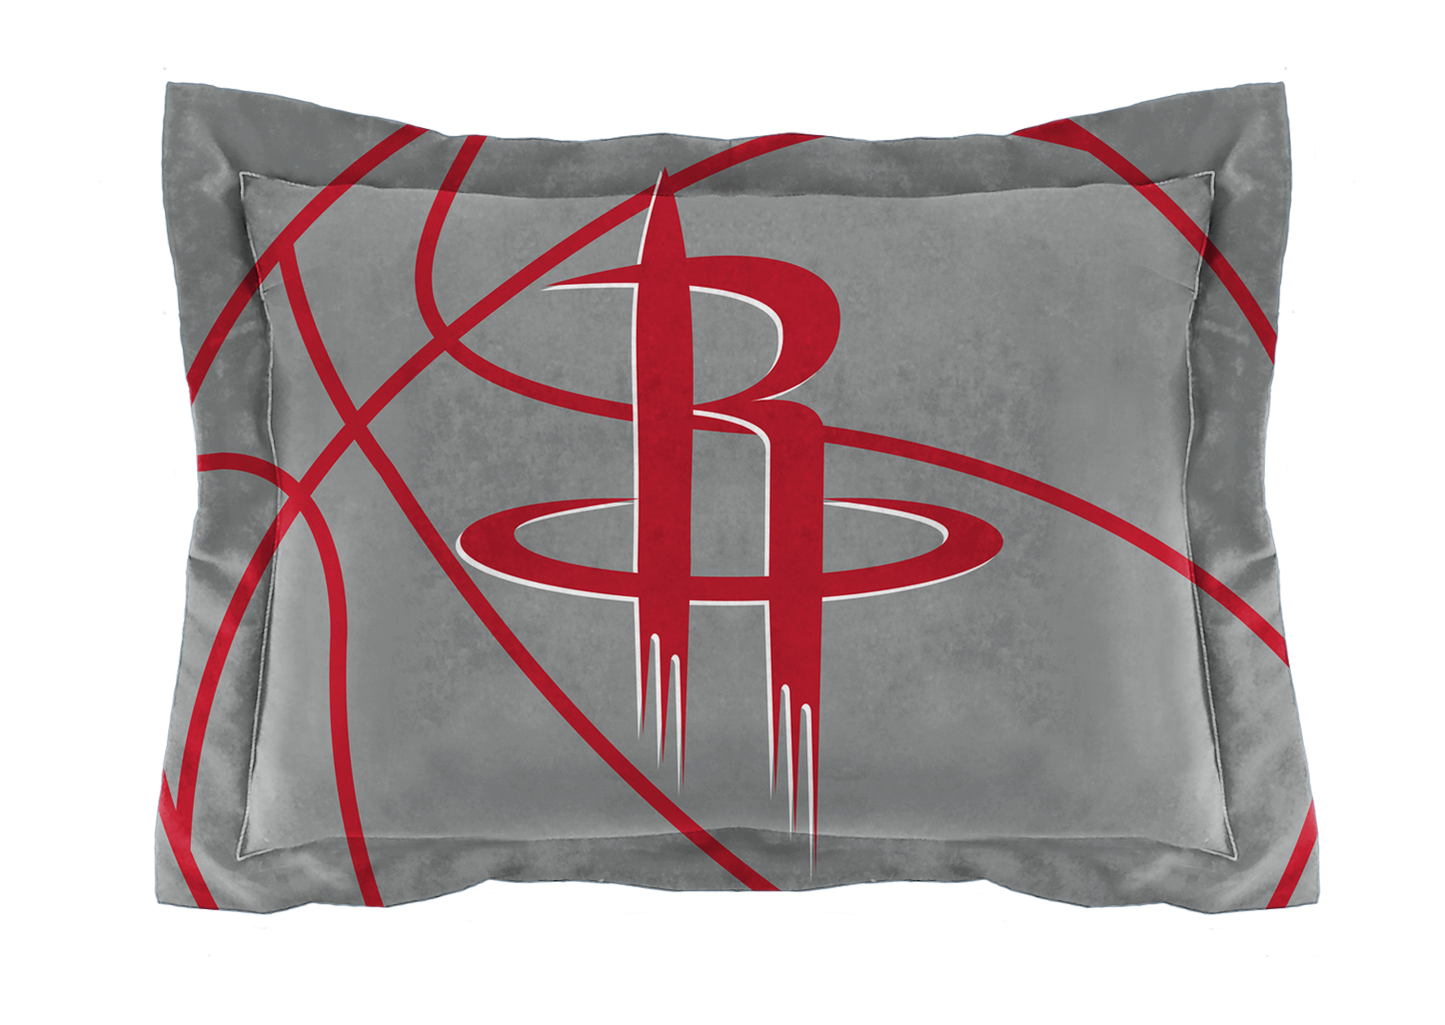 Rockets OFFICIAL NBA "Reverse Slam" Full/Queen Comforter & Sham Set; 86" x 86"